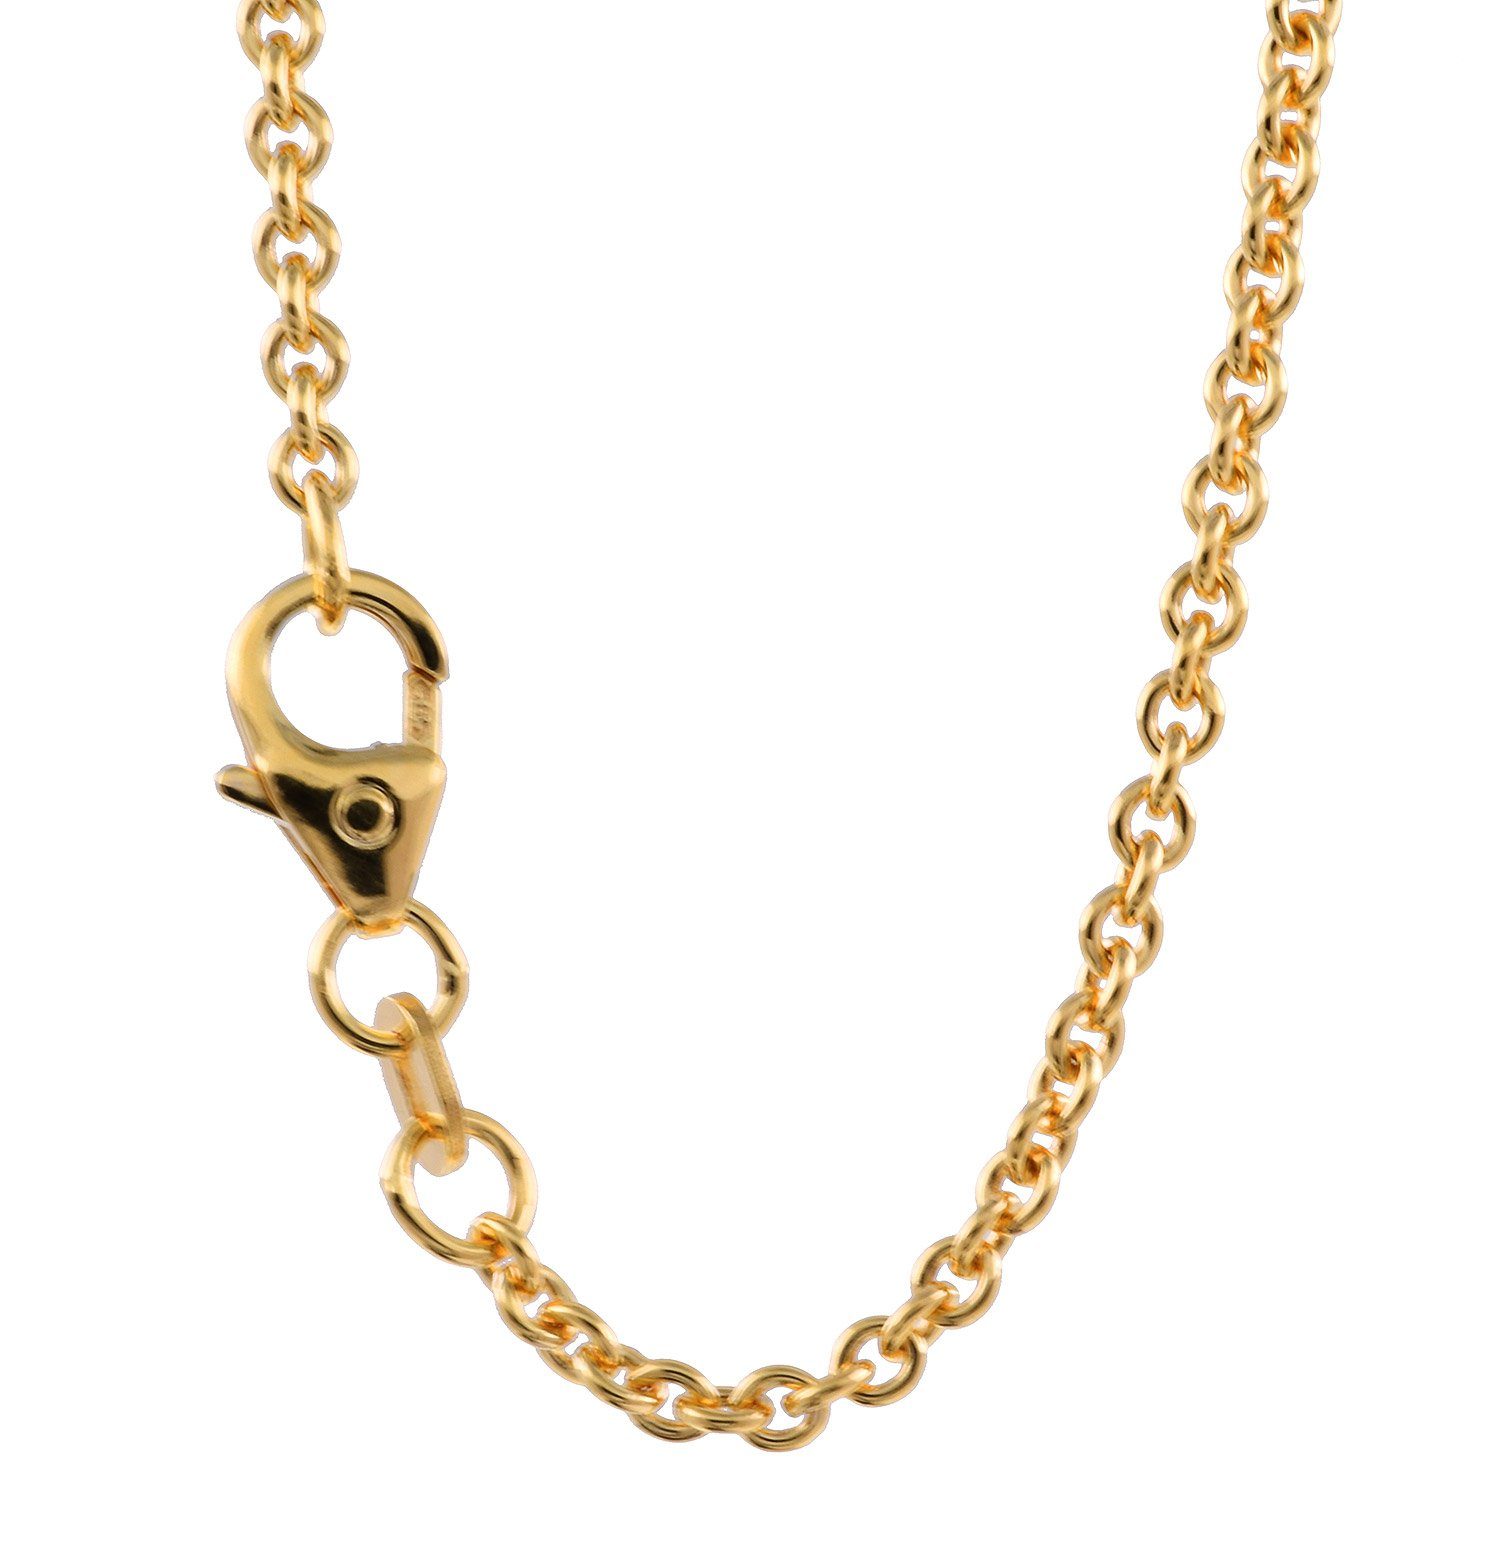 Herren Schmuck HOPLO Goldkette 2,0 mm 42 cm 750 - 18 Karat Gold Halskette Ankerkette rund massiv Gold hochwertige Goldkette 5,9 